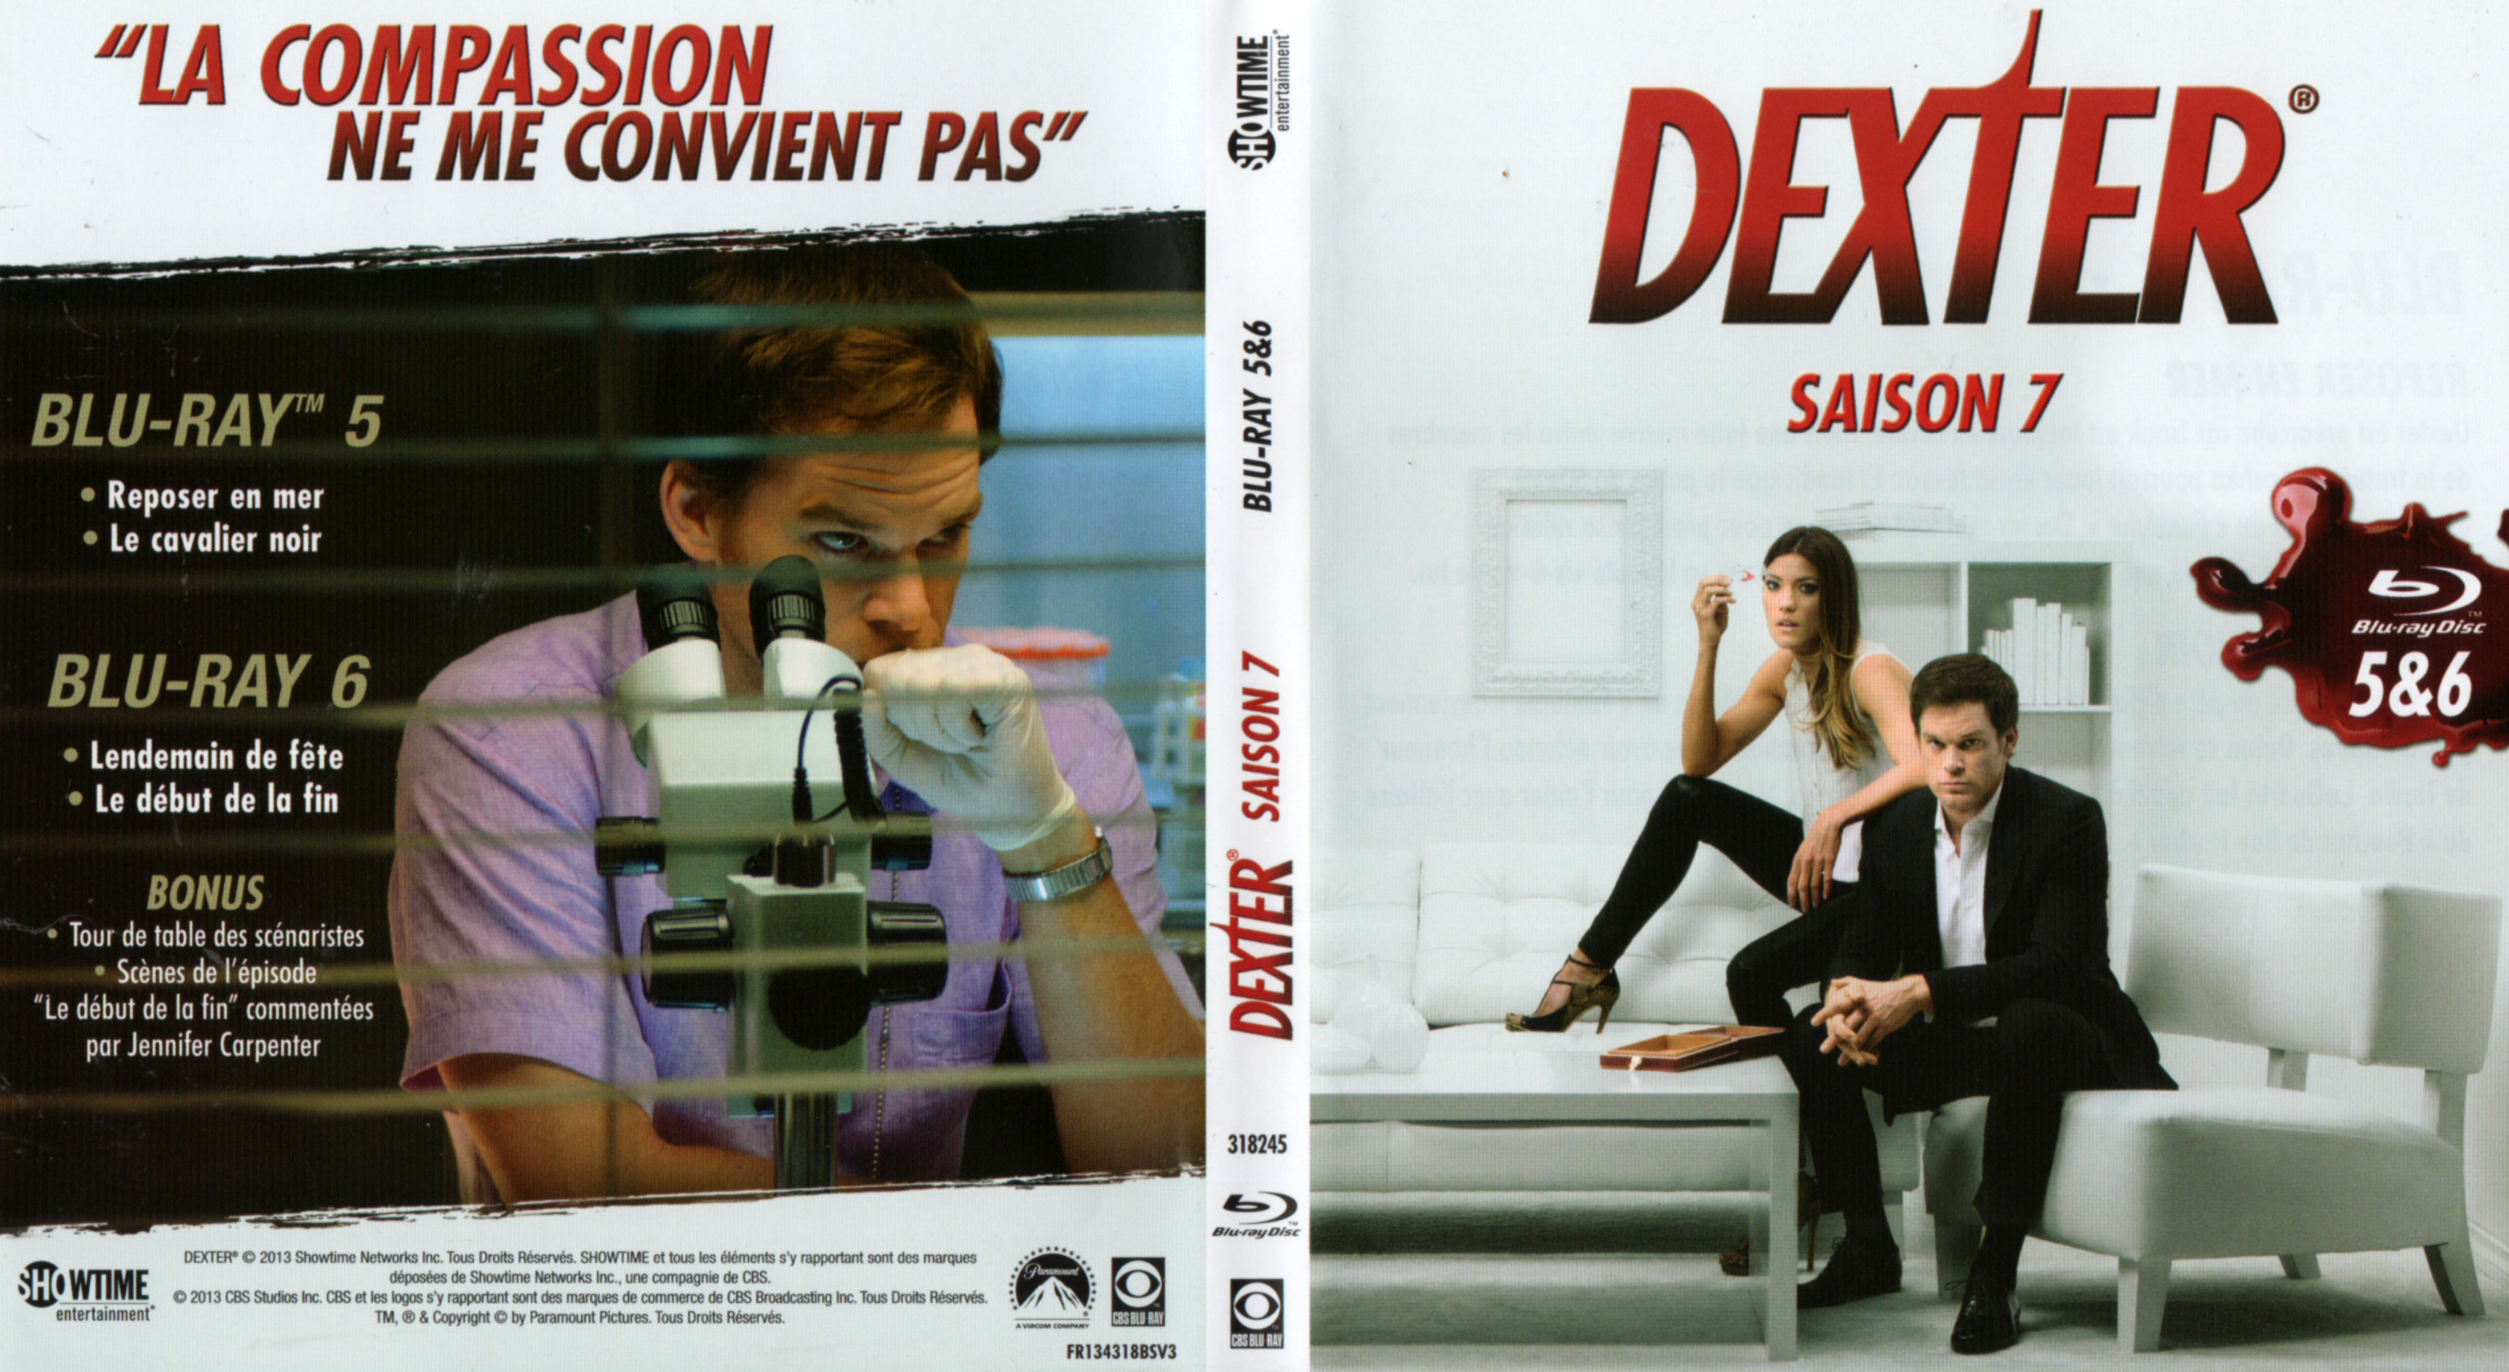 Jaquette DVD Dexter saison 7 DISC 3 (BLU-RAY)